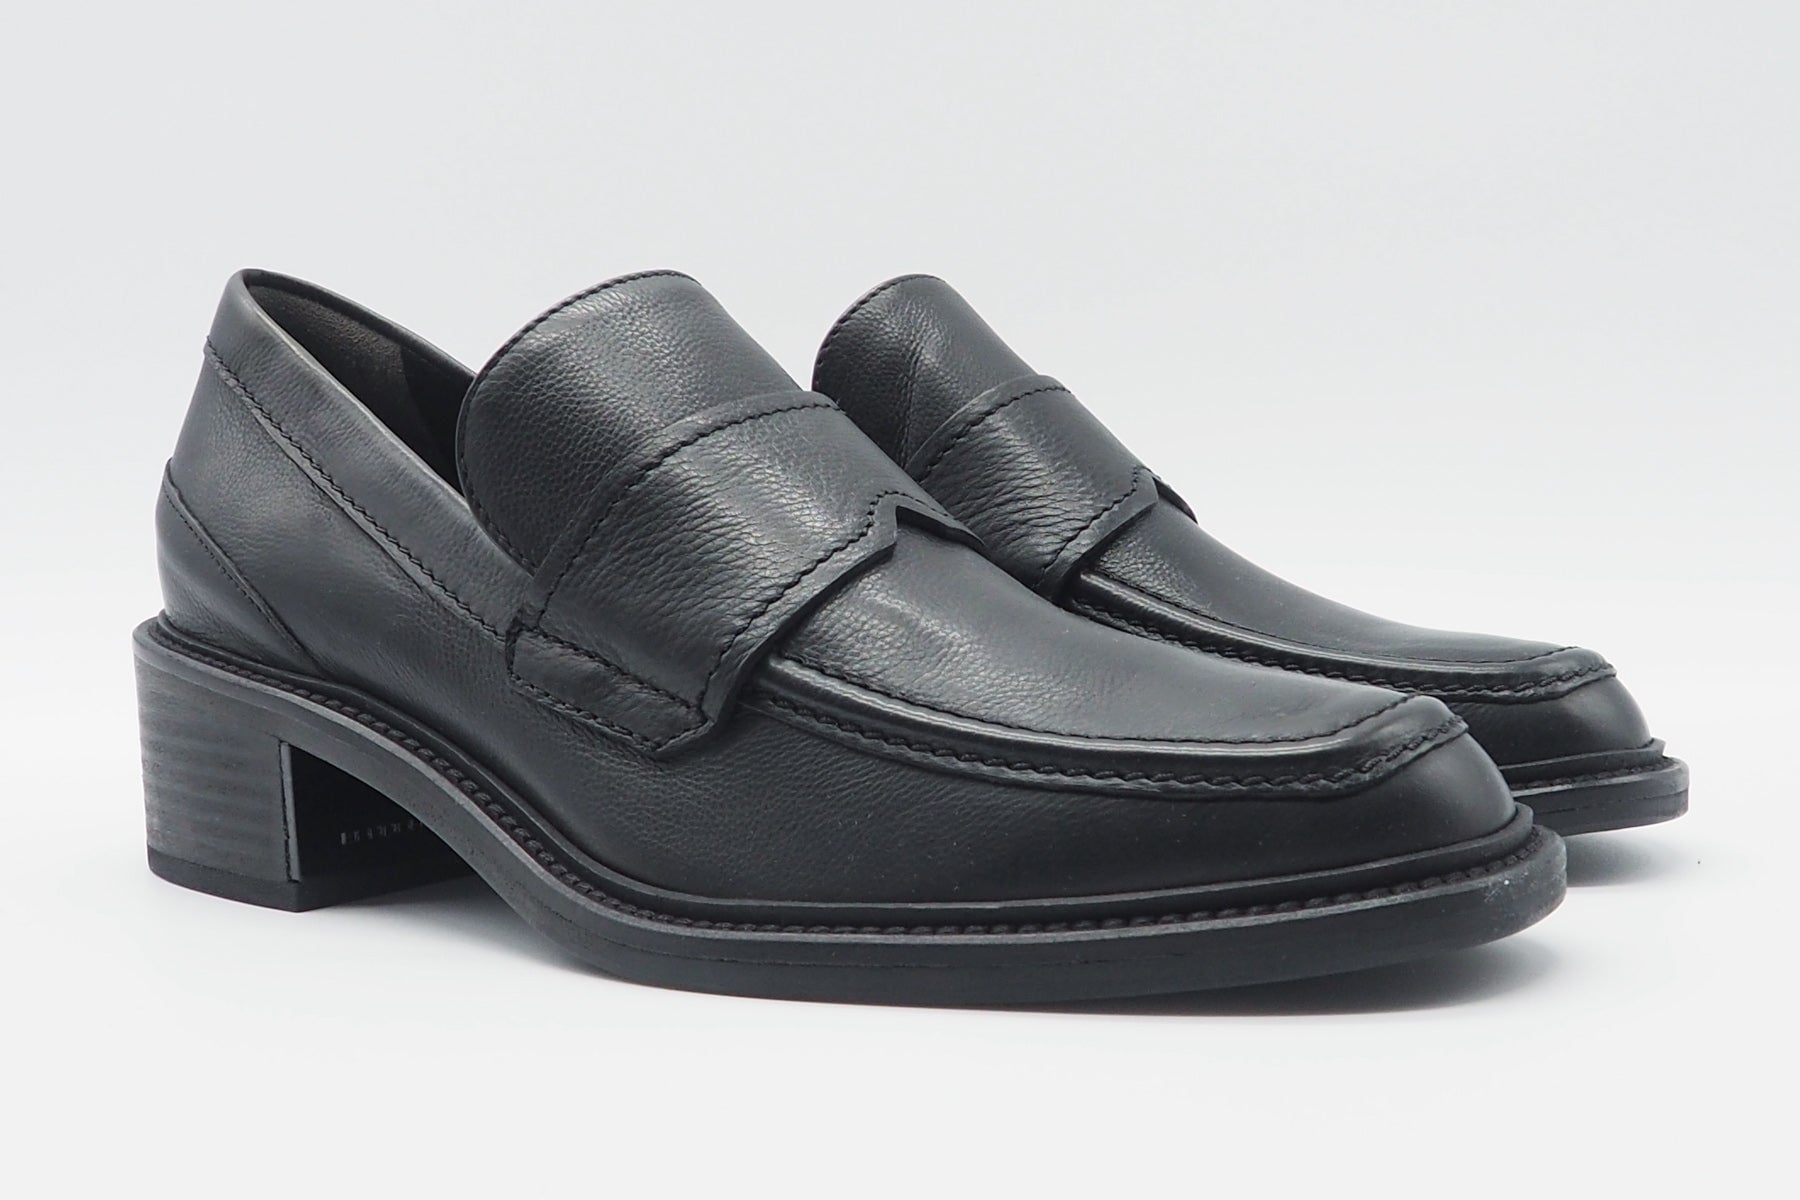 Damen Loafer aus Leder in Schwarz - Stick - Absatz 4,5cm Damen Loafers & Schnürer Kennel & Schmenger 